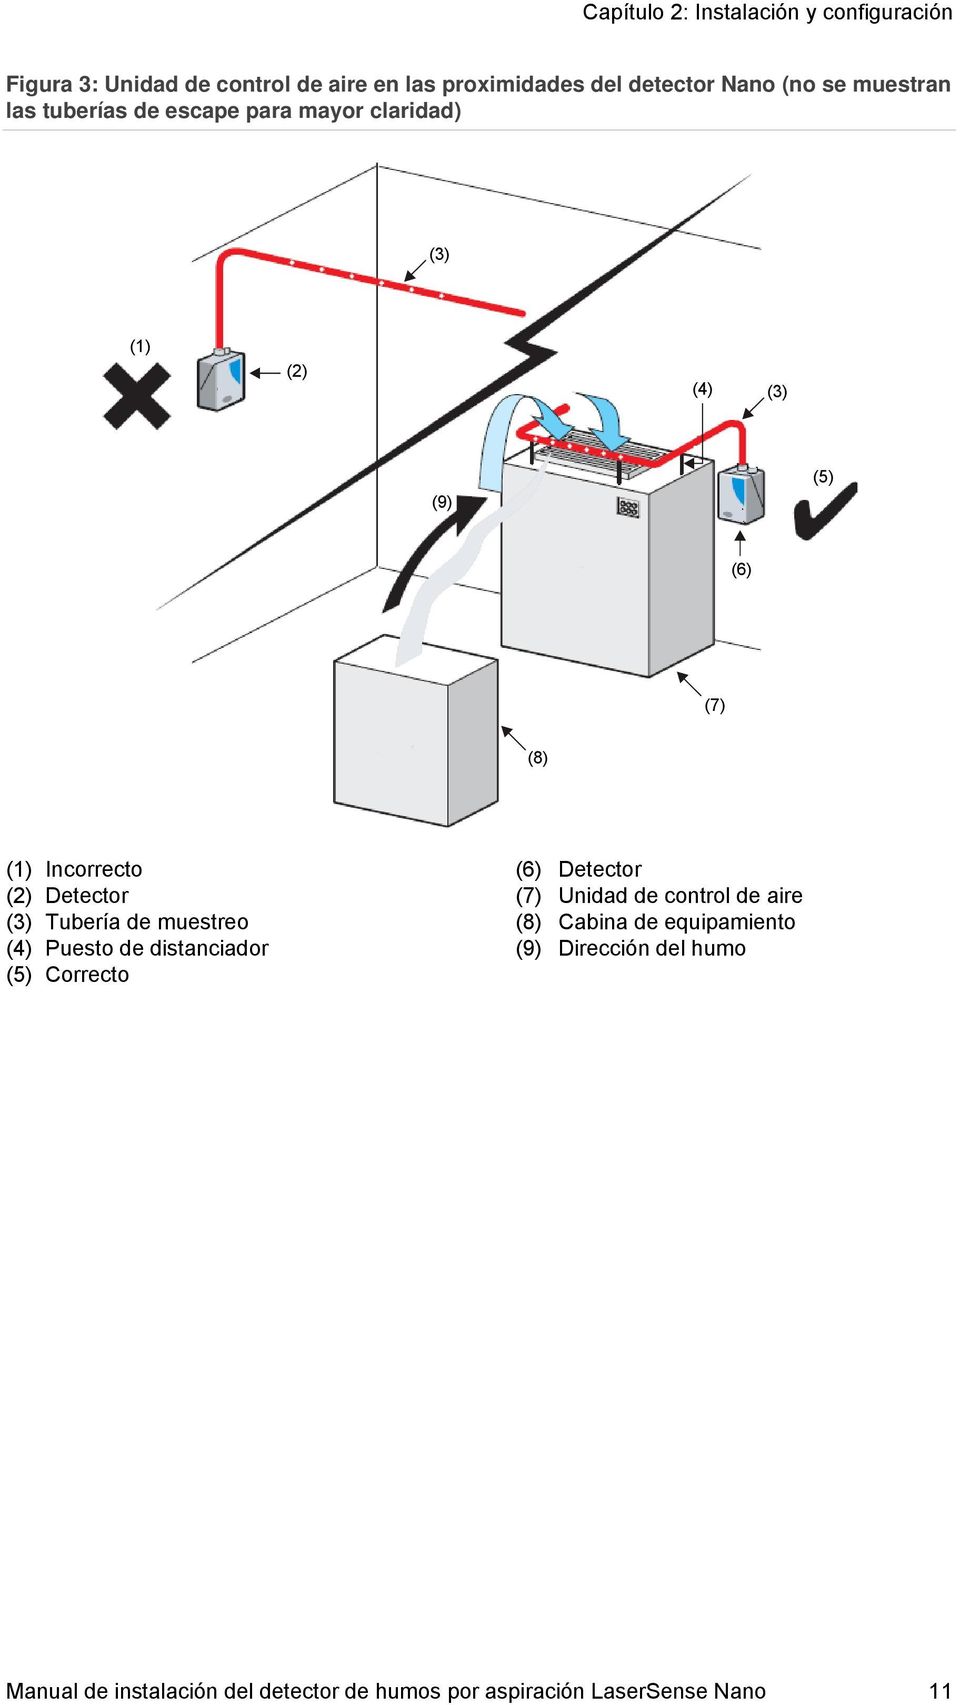 Detector (3) Tubería de muestreo (4) Puesto de distanciador (5) Correcto (6) Detector (7) Unidad de control de aire